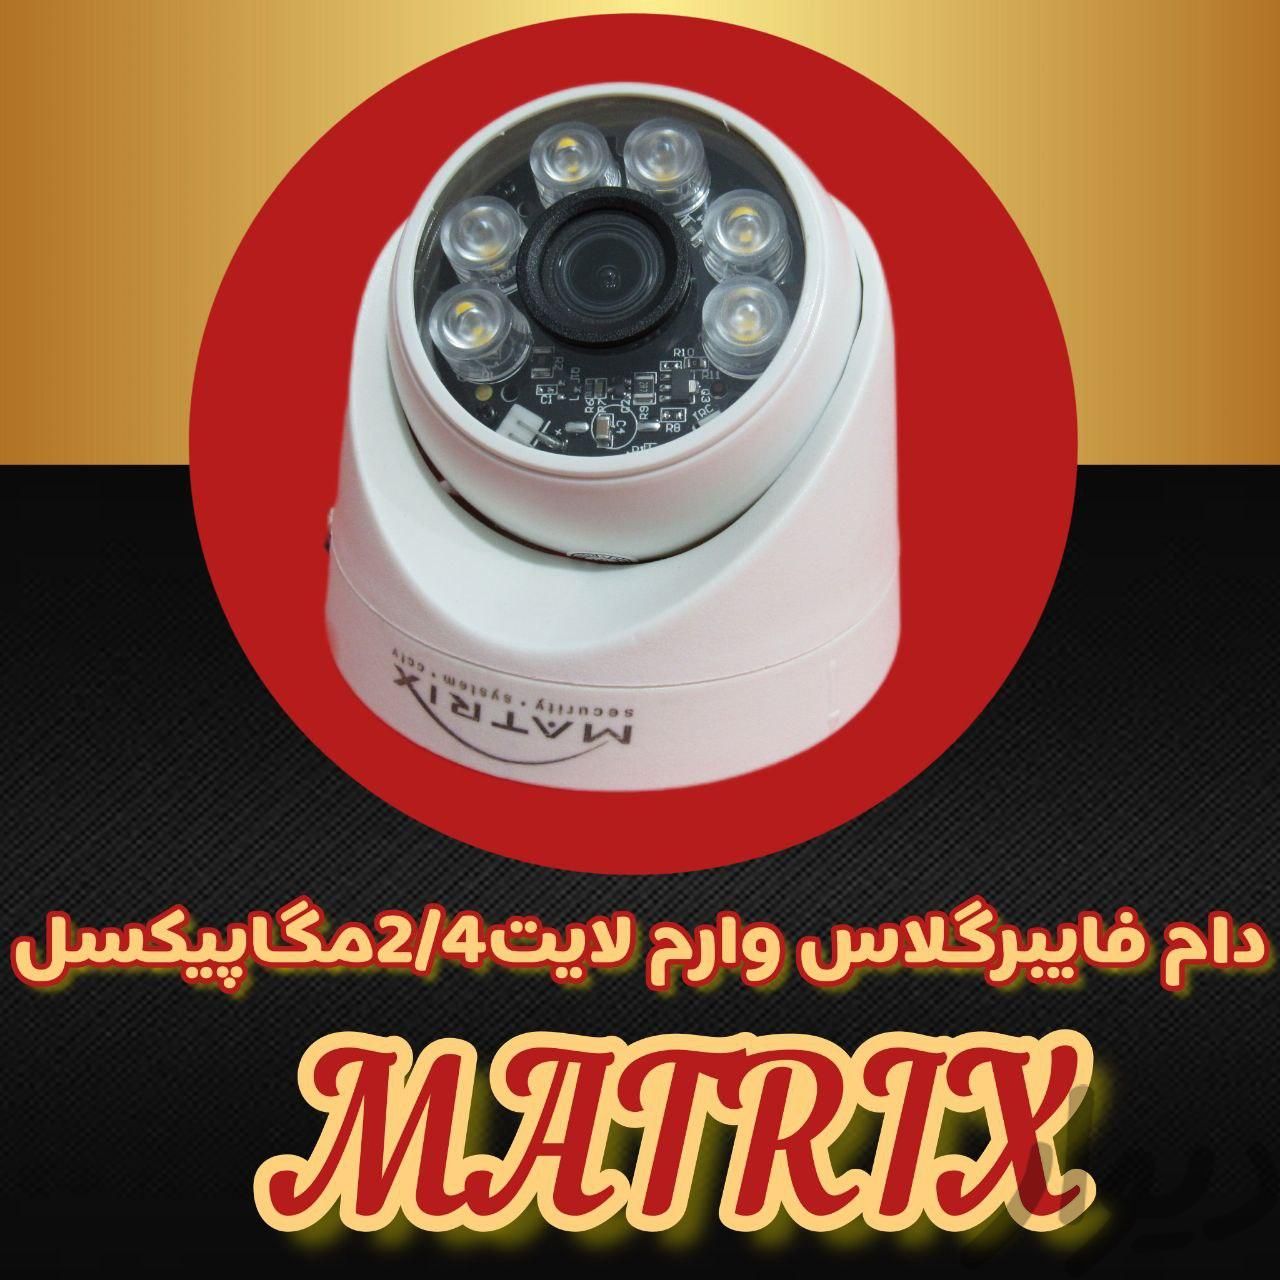 دوربین مداربسته با کیفیت تصویر 5 مگاپیکسل به بالا|دوربین مداربسته|کرج, گلشهر|دیوار